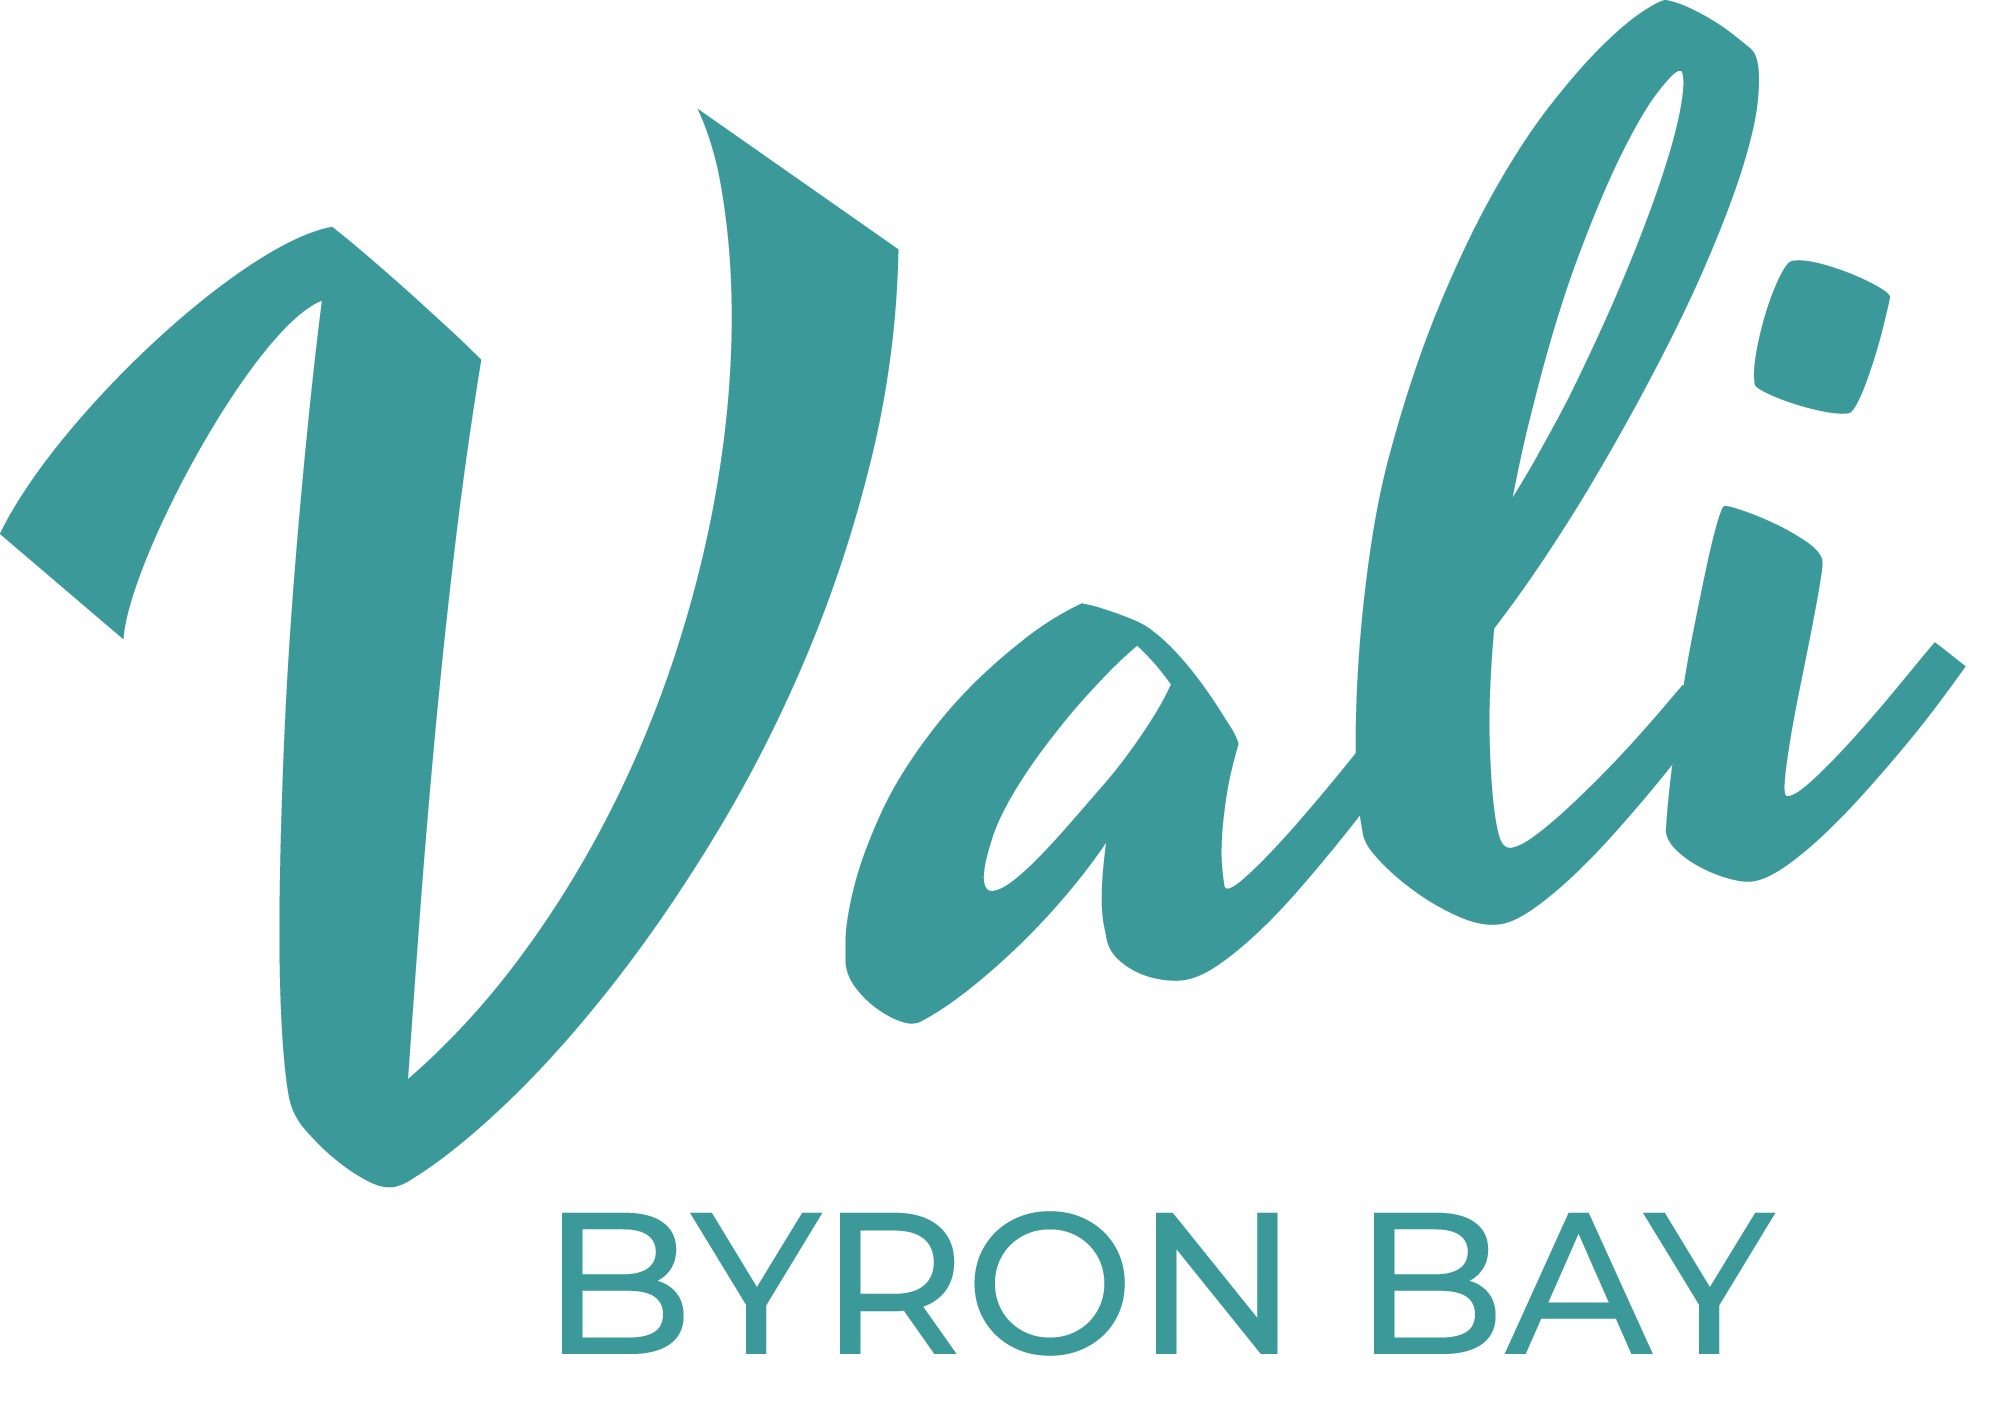 Vali Byron Logo in Aqua